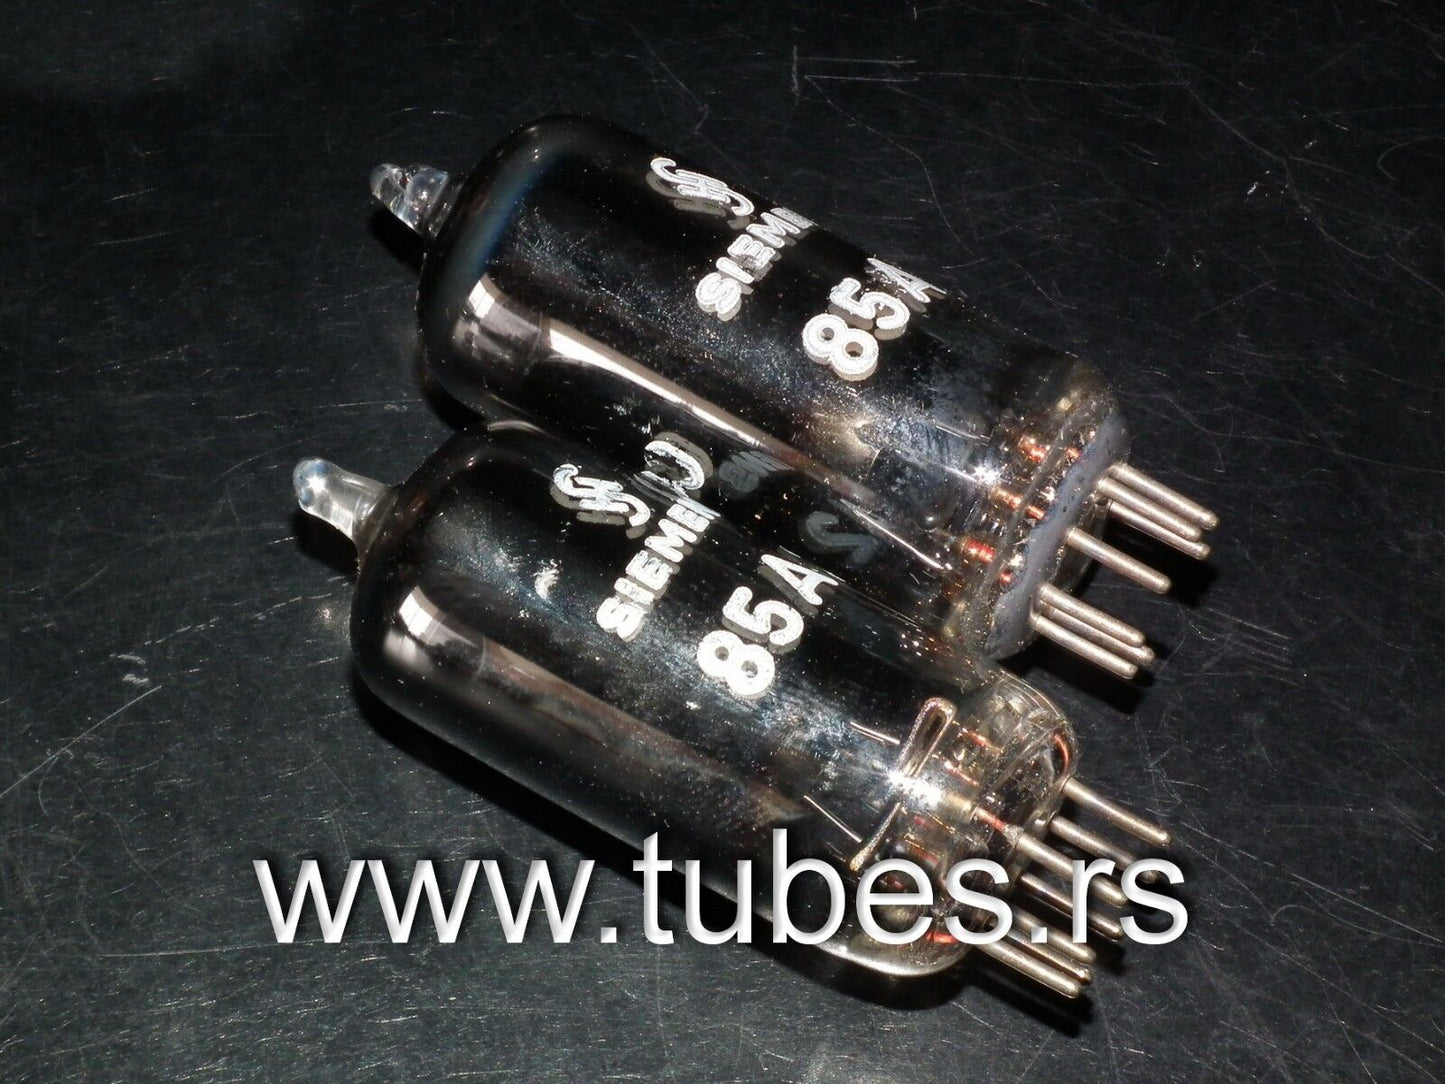 85A2 Siemens 0G3 OG3 stablilisator tube STV85/10  Made in Germany